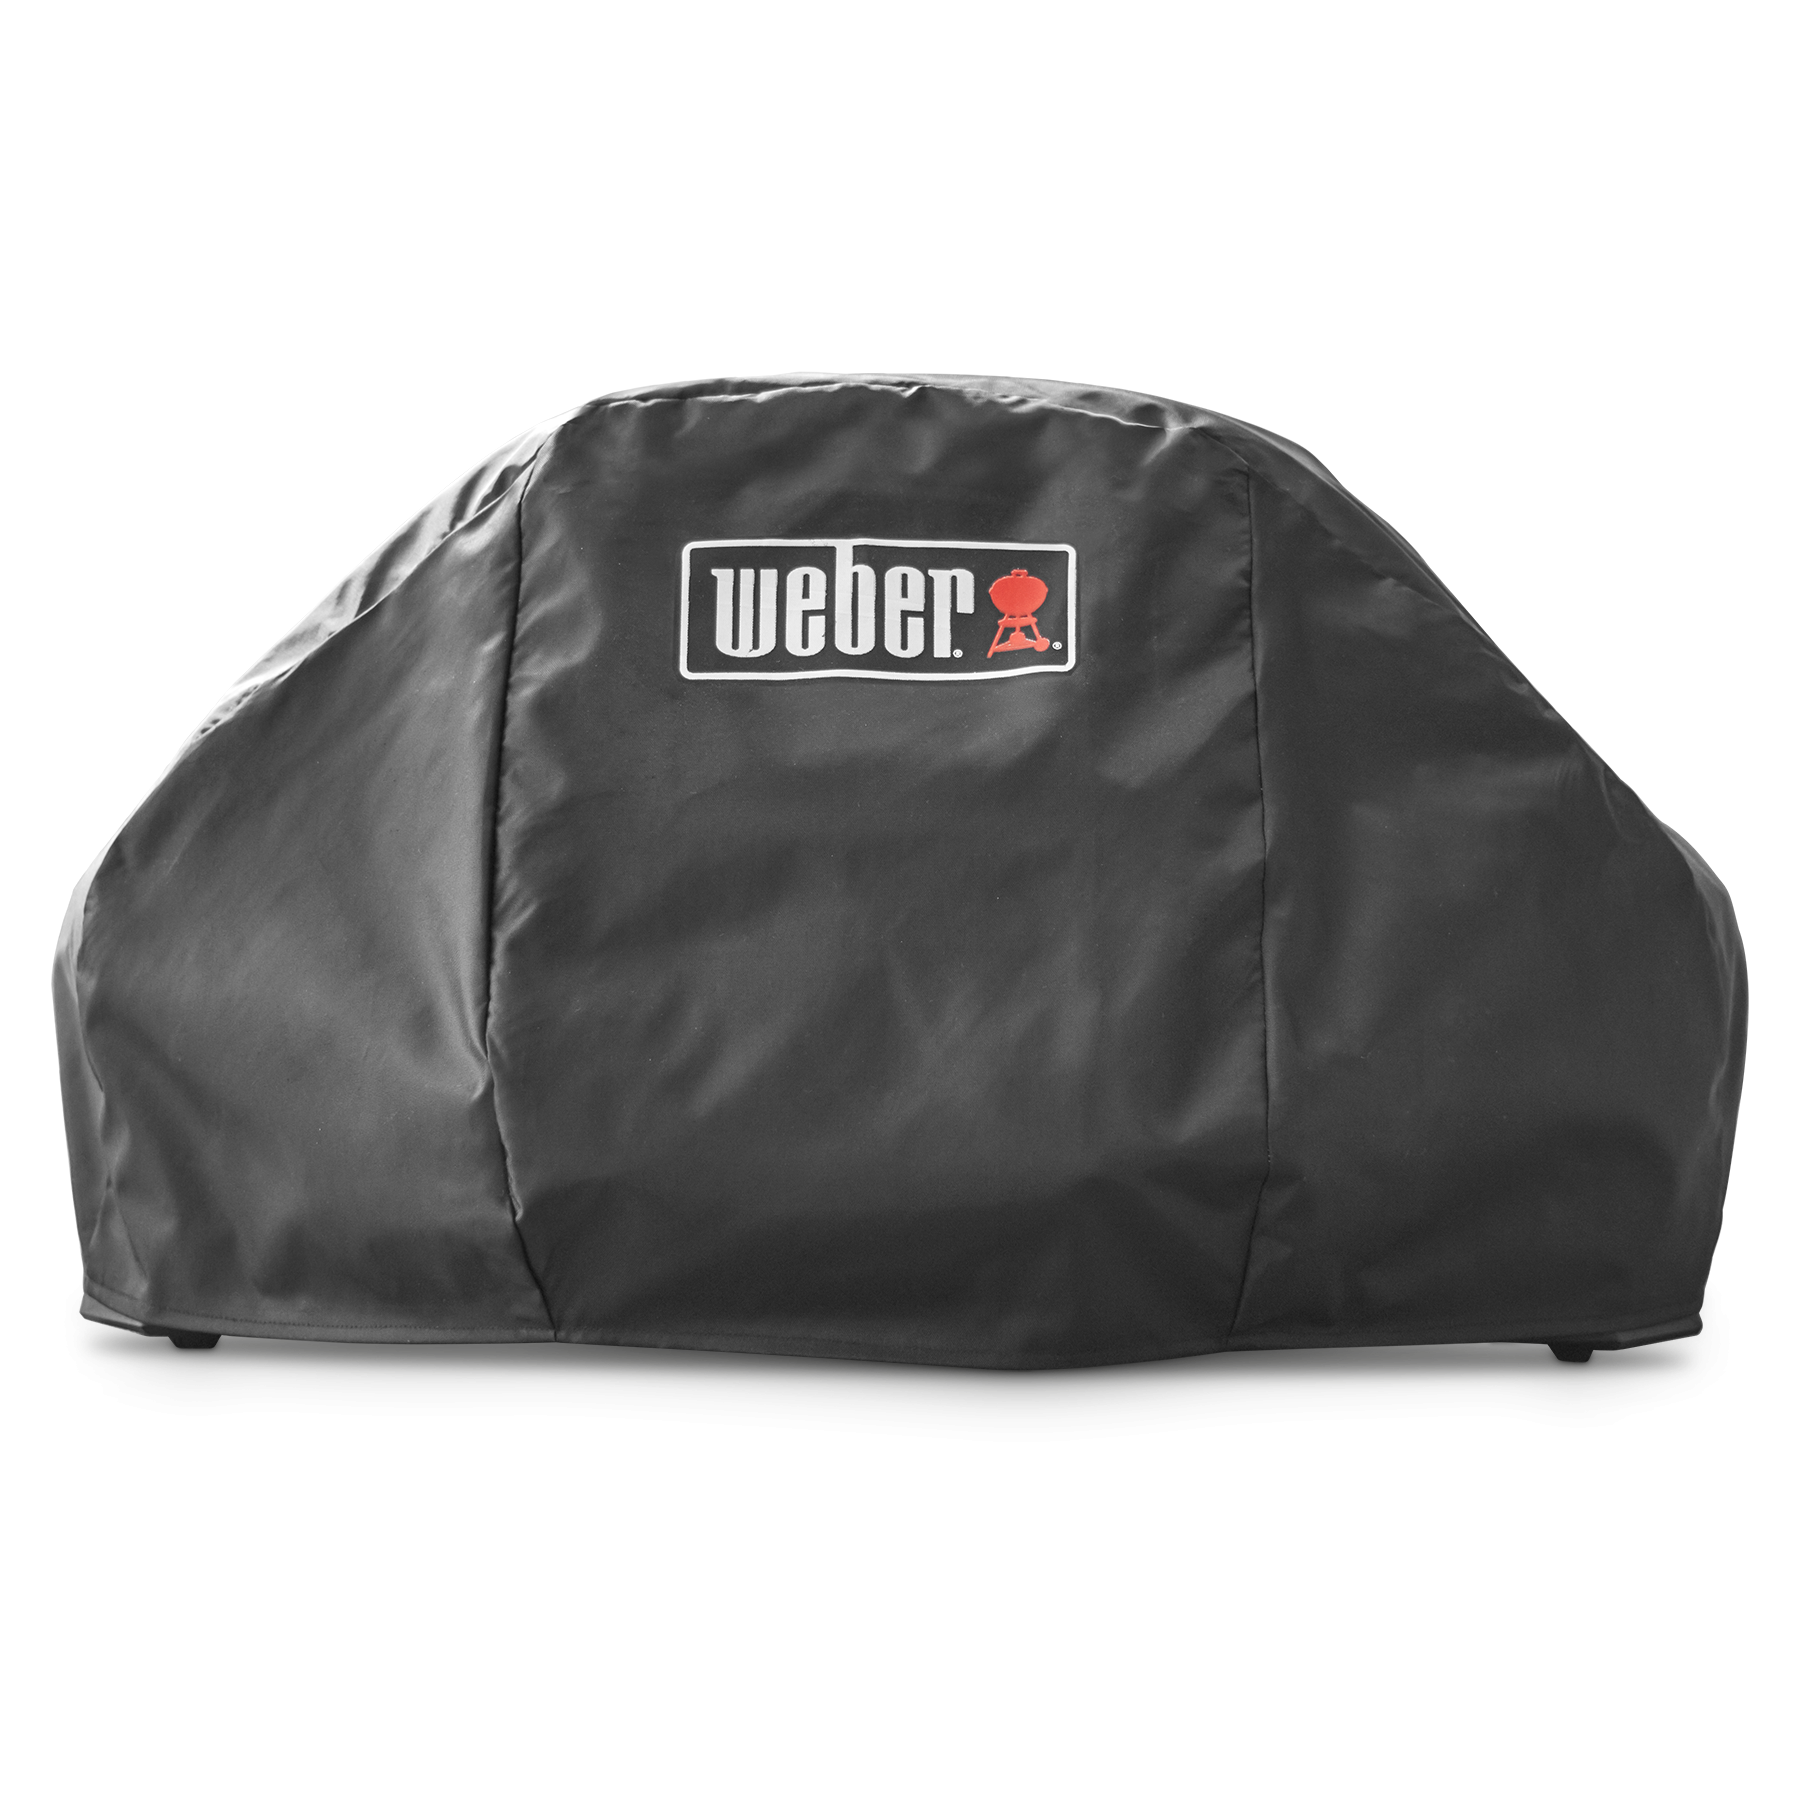 Weber Pulse Bonnet Cover Large